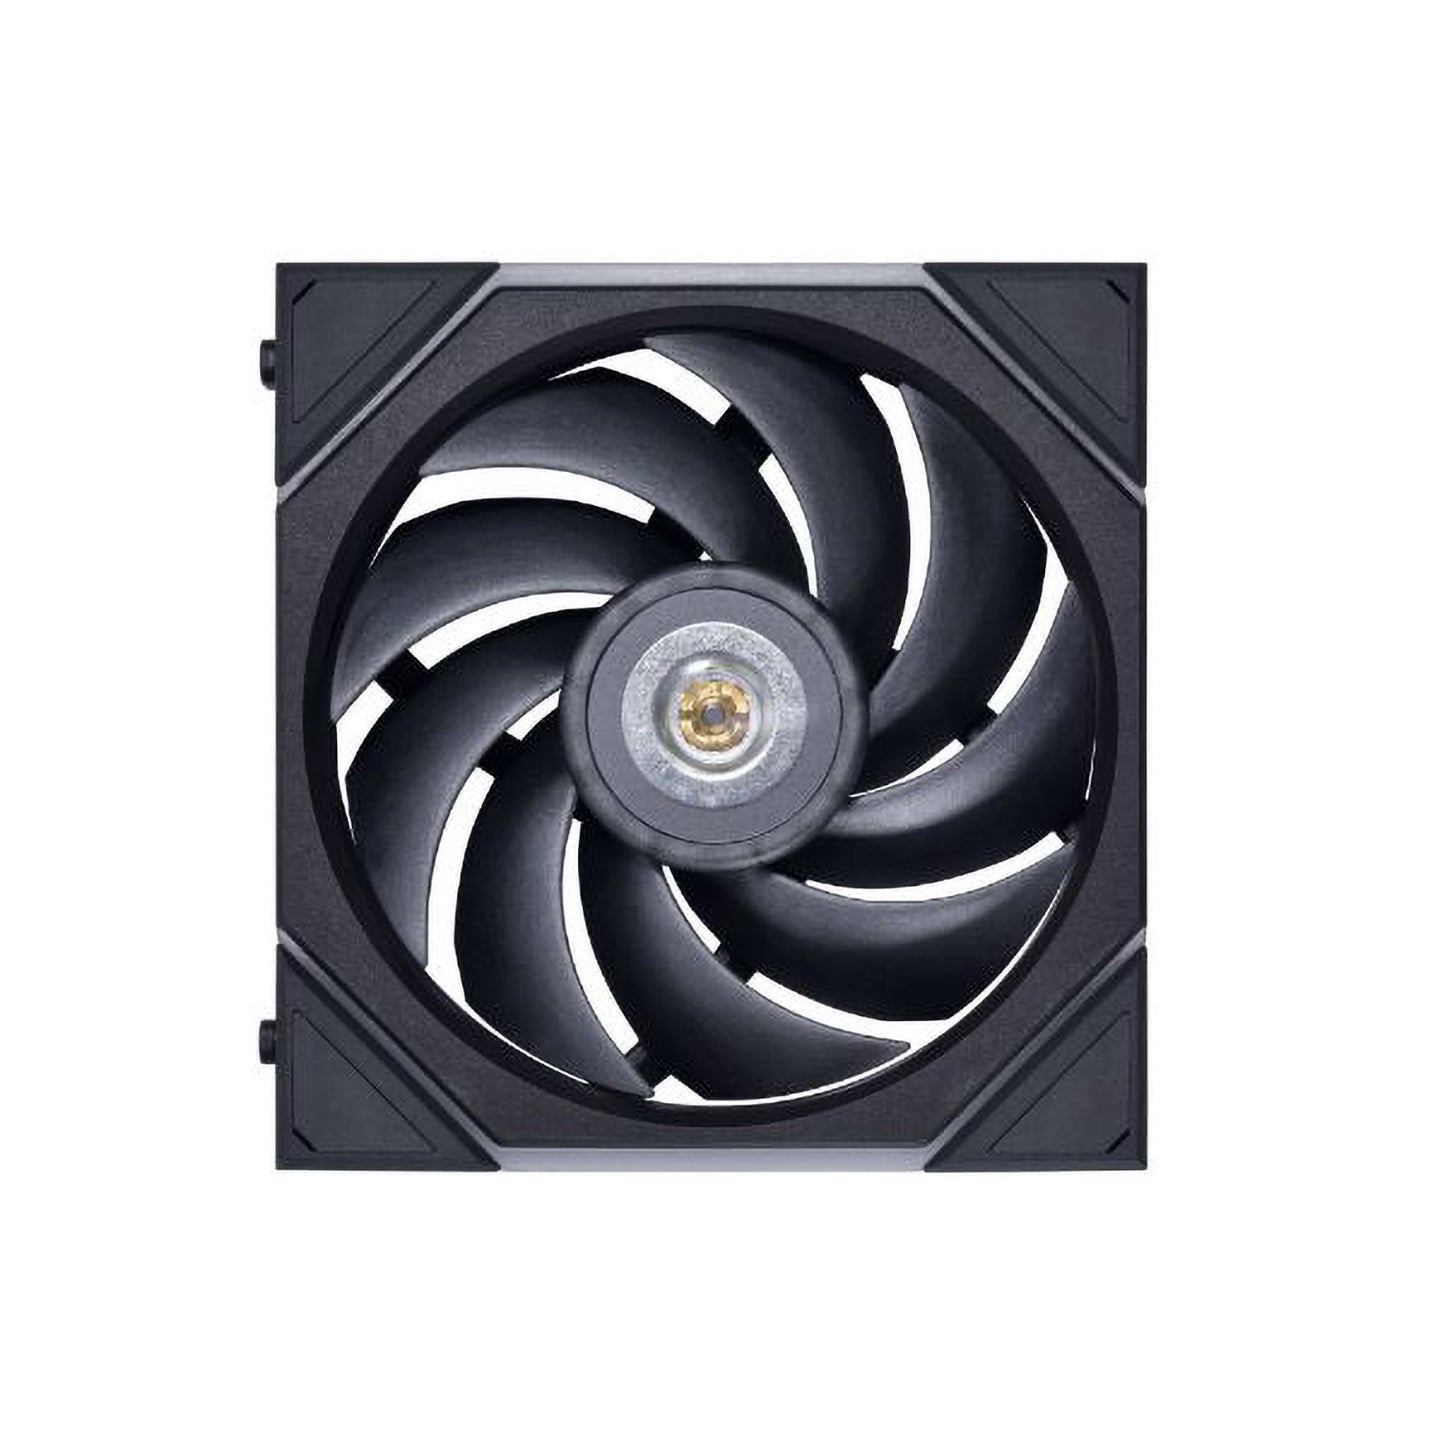 Lian Li UNI FAN TL 120 140, Triple Pack (Controller Included), RGB Black/White Regular & Reverse Blade Version, Computer Cooler Fan